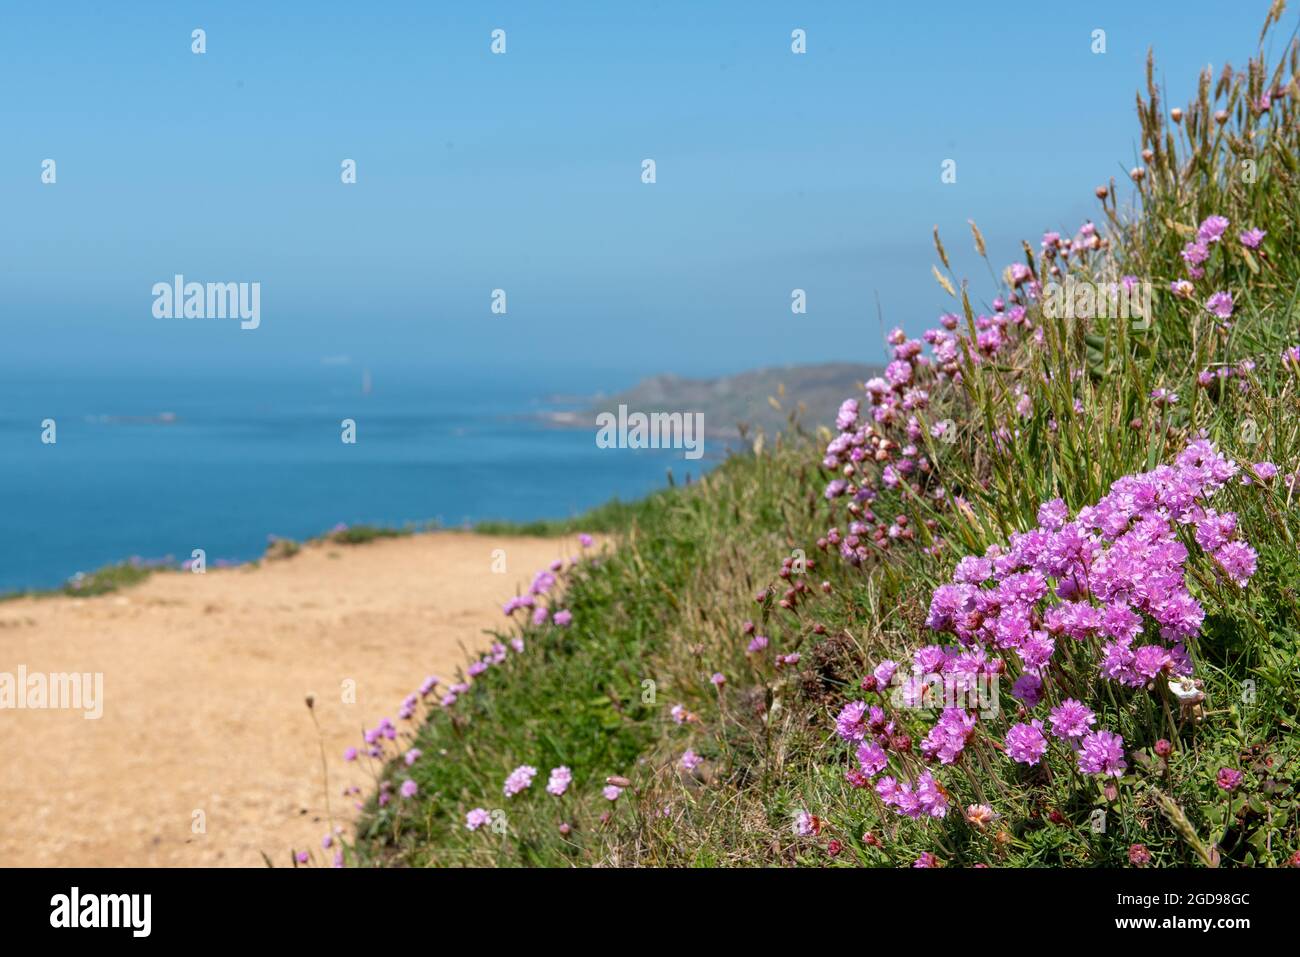 Armeria maritima-Gazon d'Espagne-Oeillet de mer sur le bord d'une falaise, France, Manche, Printemps. Stock Photo